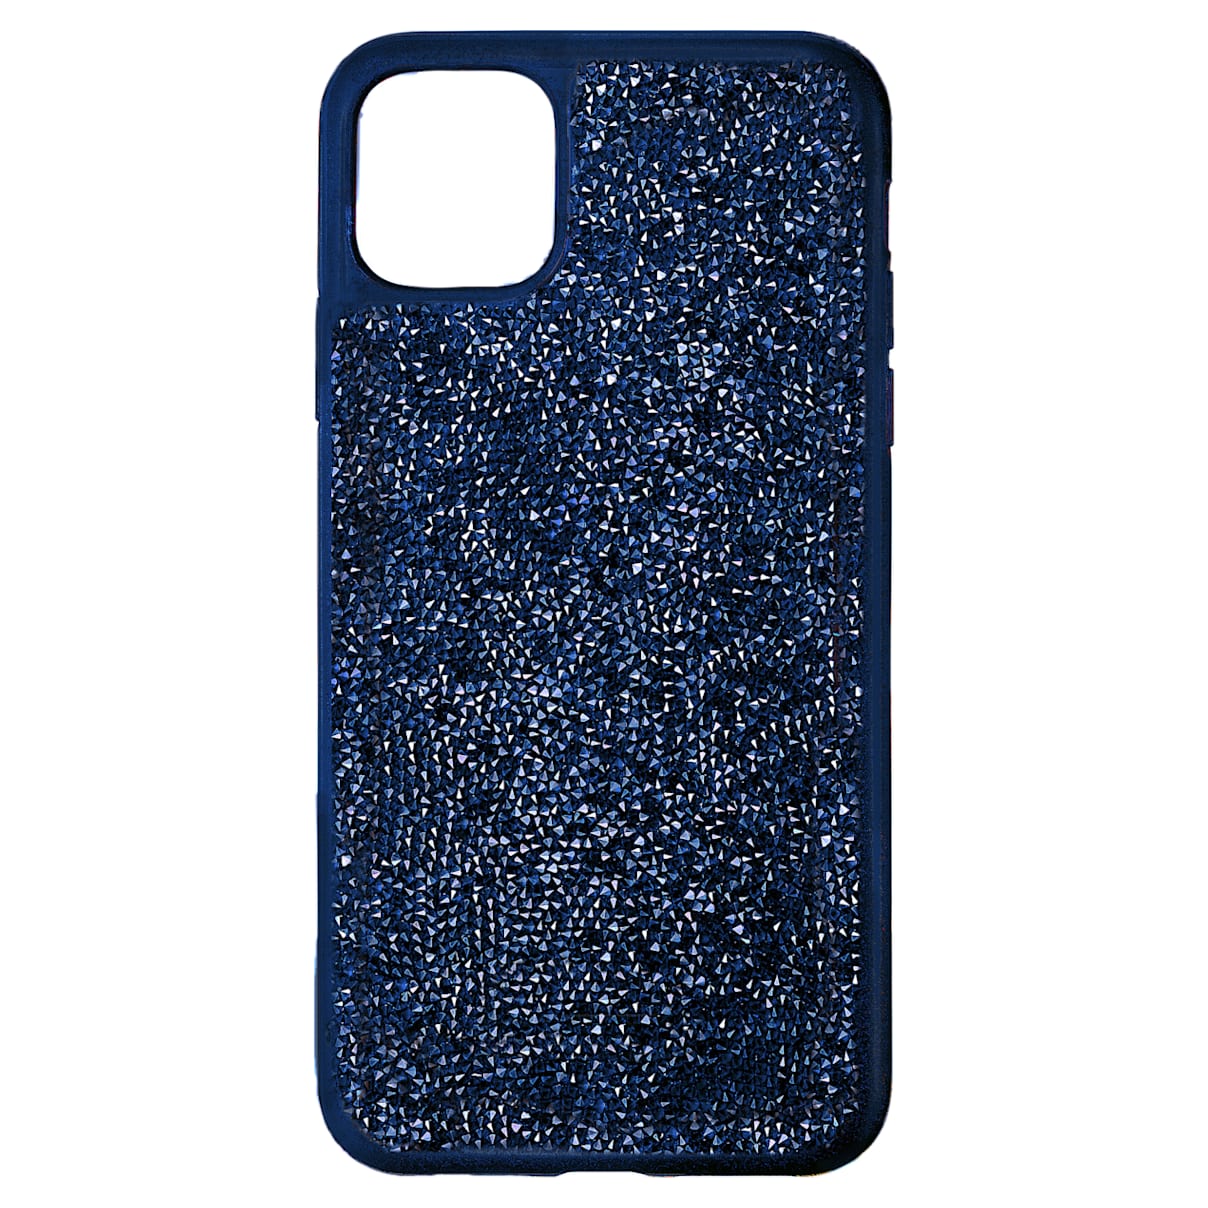 Custodia per smartphone con bordi protettivi Glam Rock, iPhone® 11 Pro Max, blu